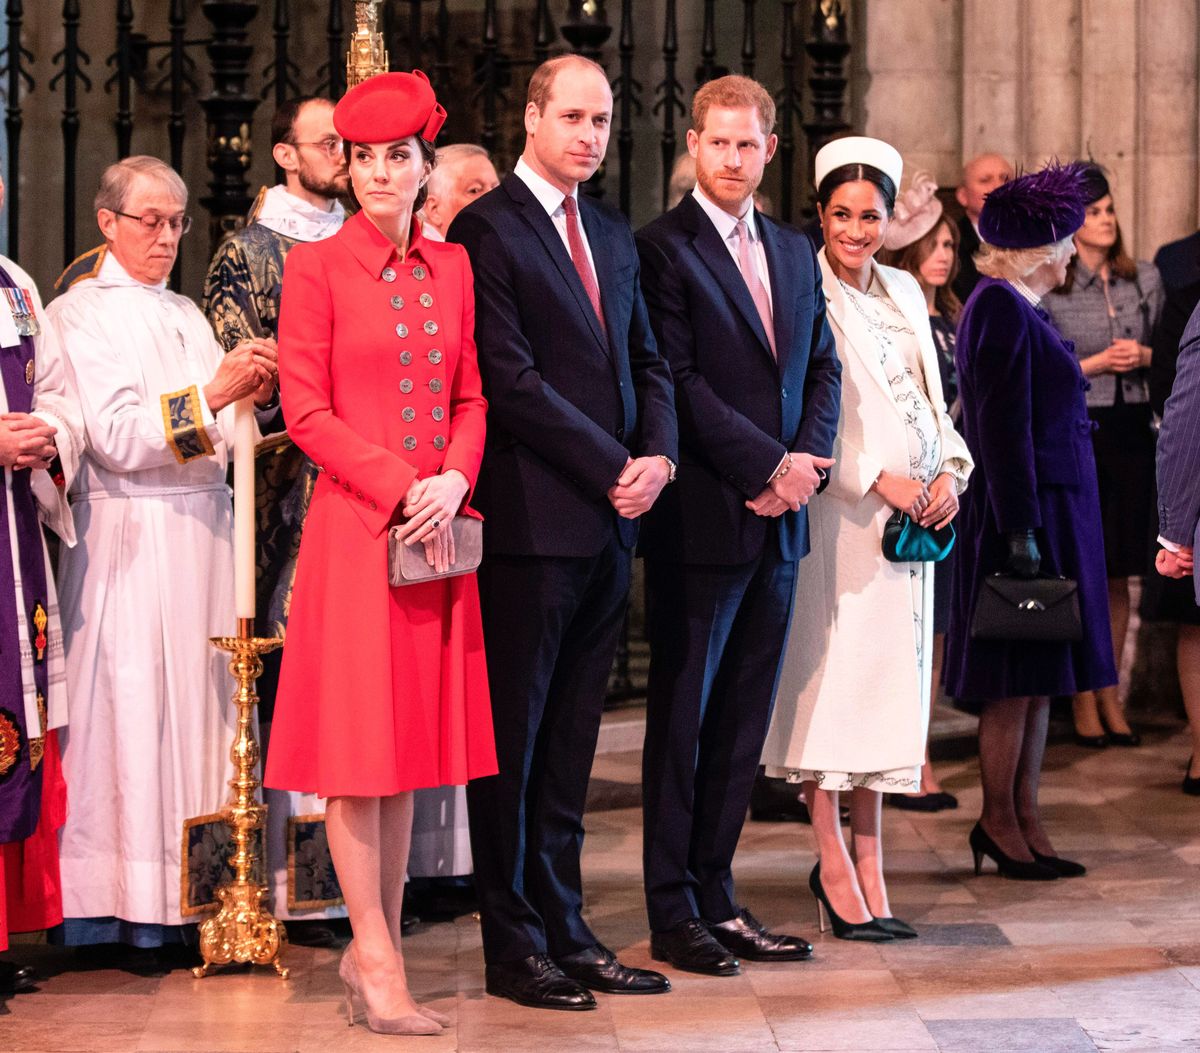 Η βασιλική οικογένεια εξακολουθεί να μιλάει για τη συνέντευξη της Μέγκαν Μαρκλ και του Πρίγκιπα Χάρι στην Όπρα